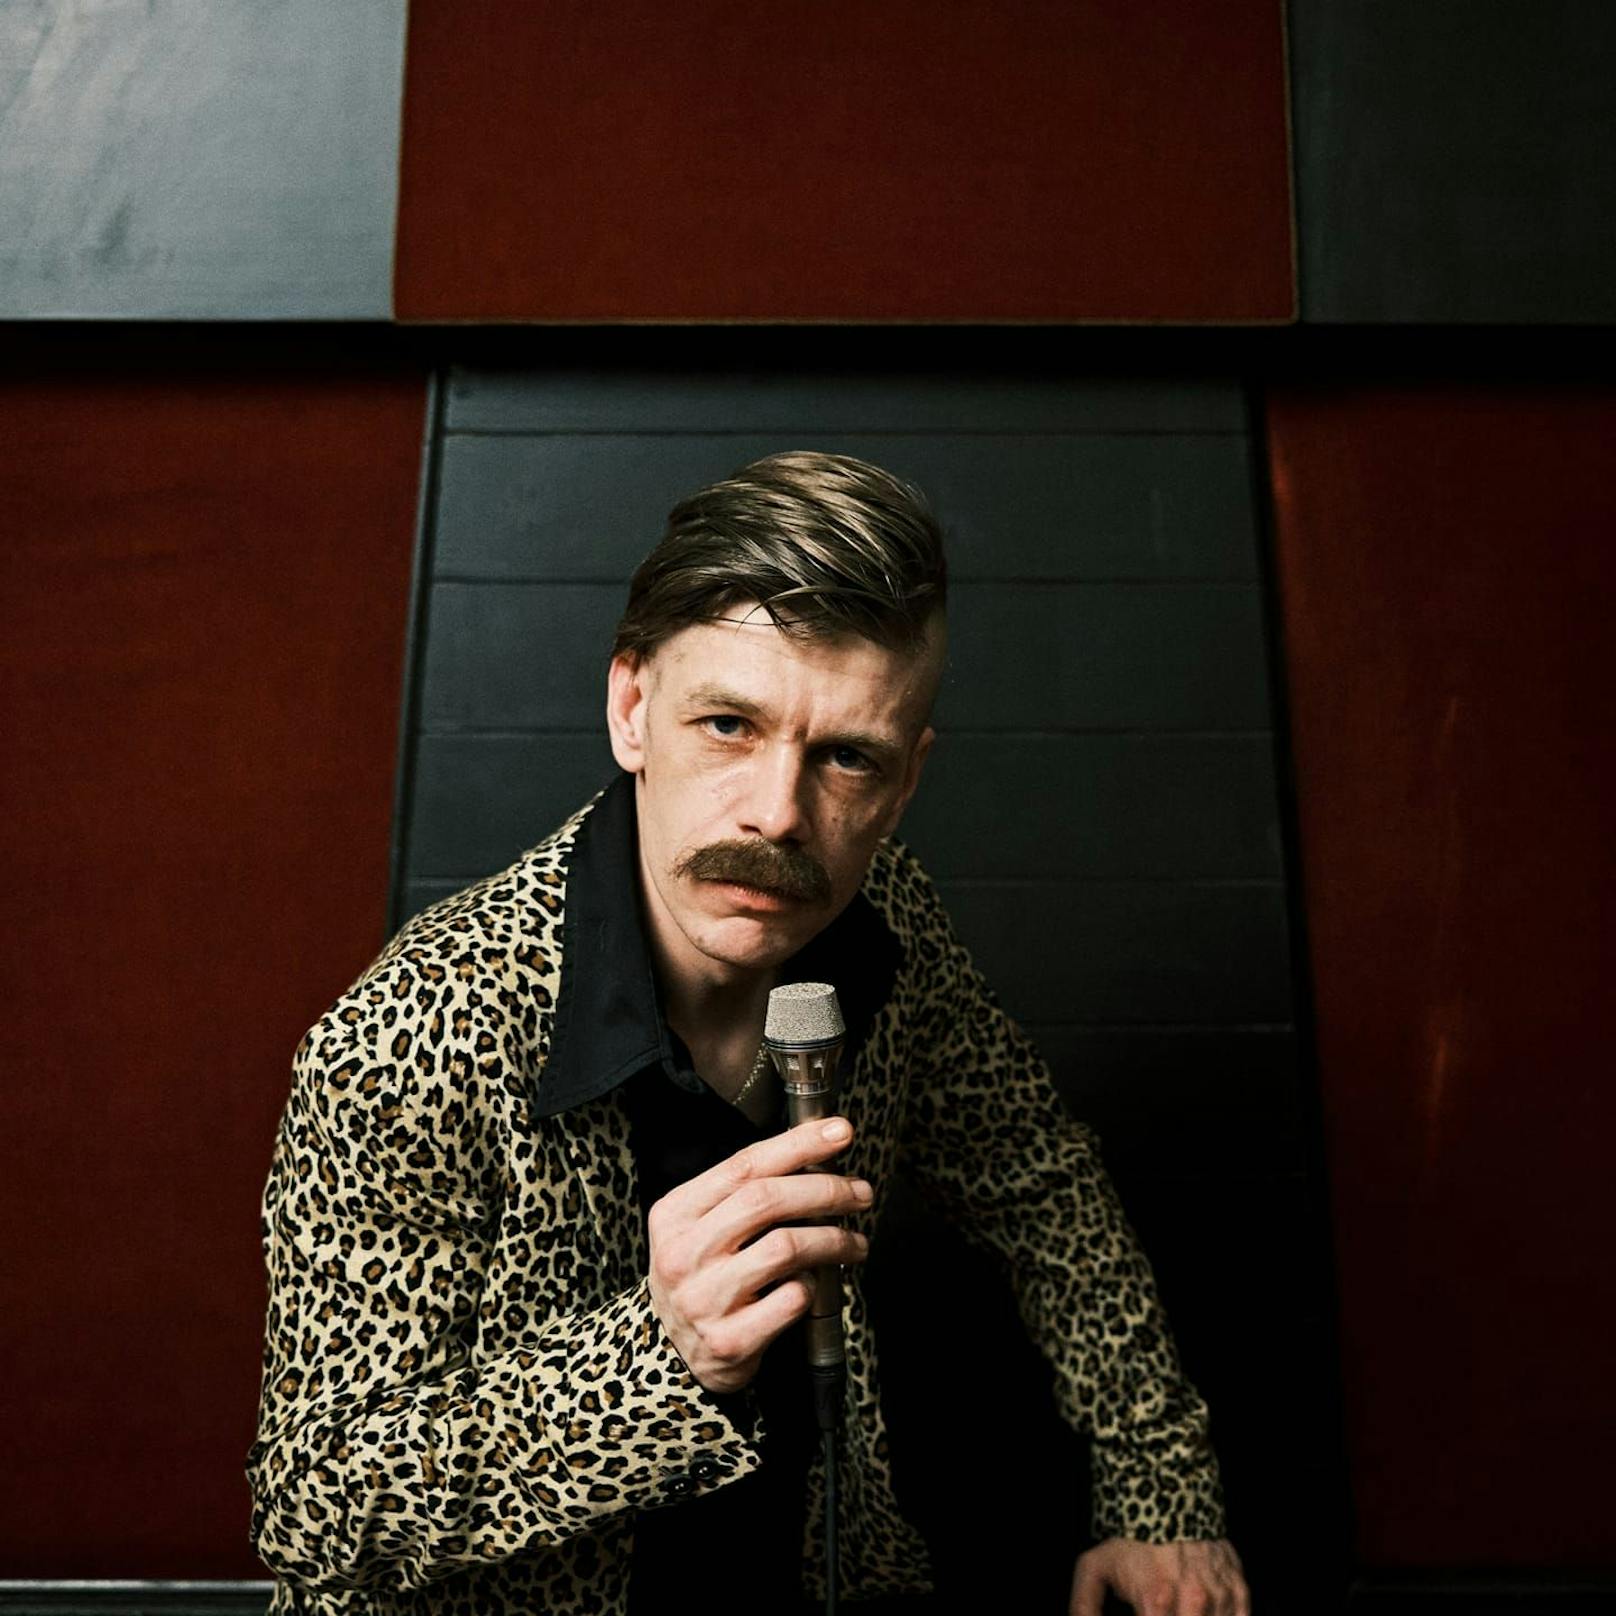 Der Wiener Florian Tremmel macht als "Gran Bankrott" Post-Punk mit Pop- und Funk-Einflüssen.